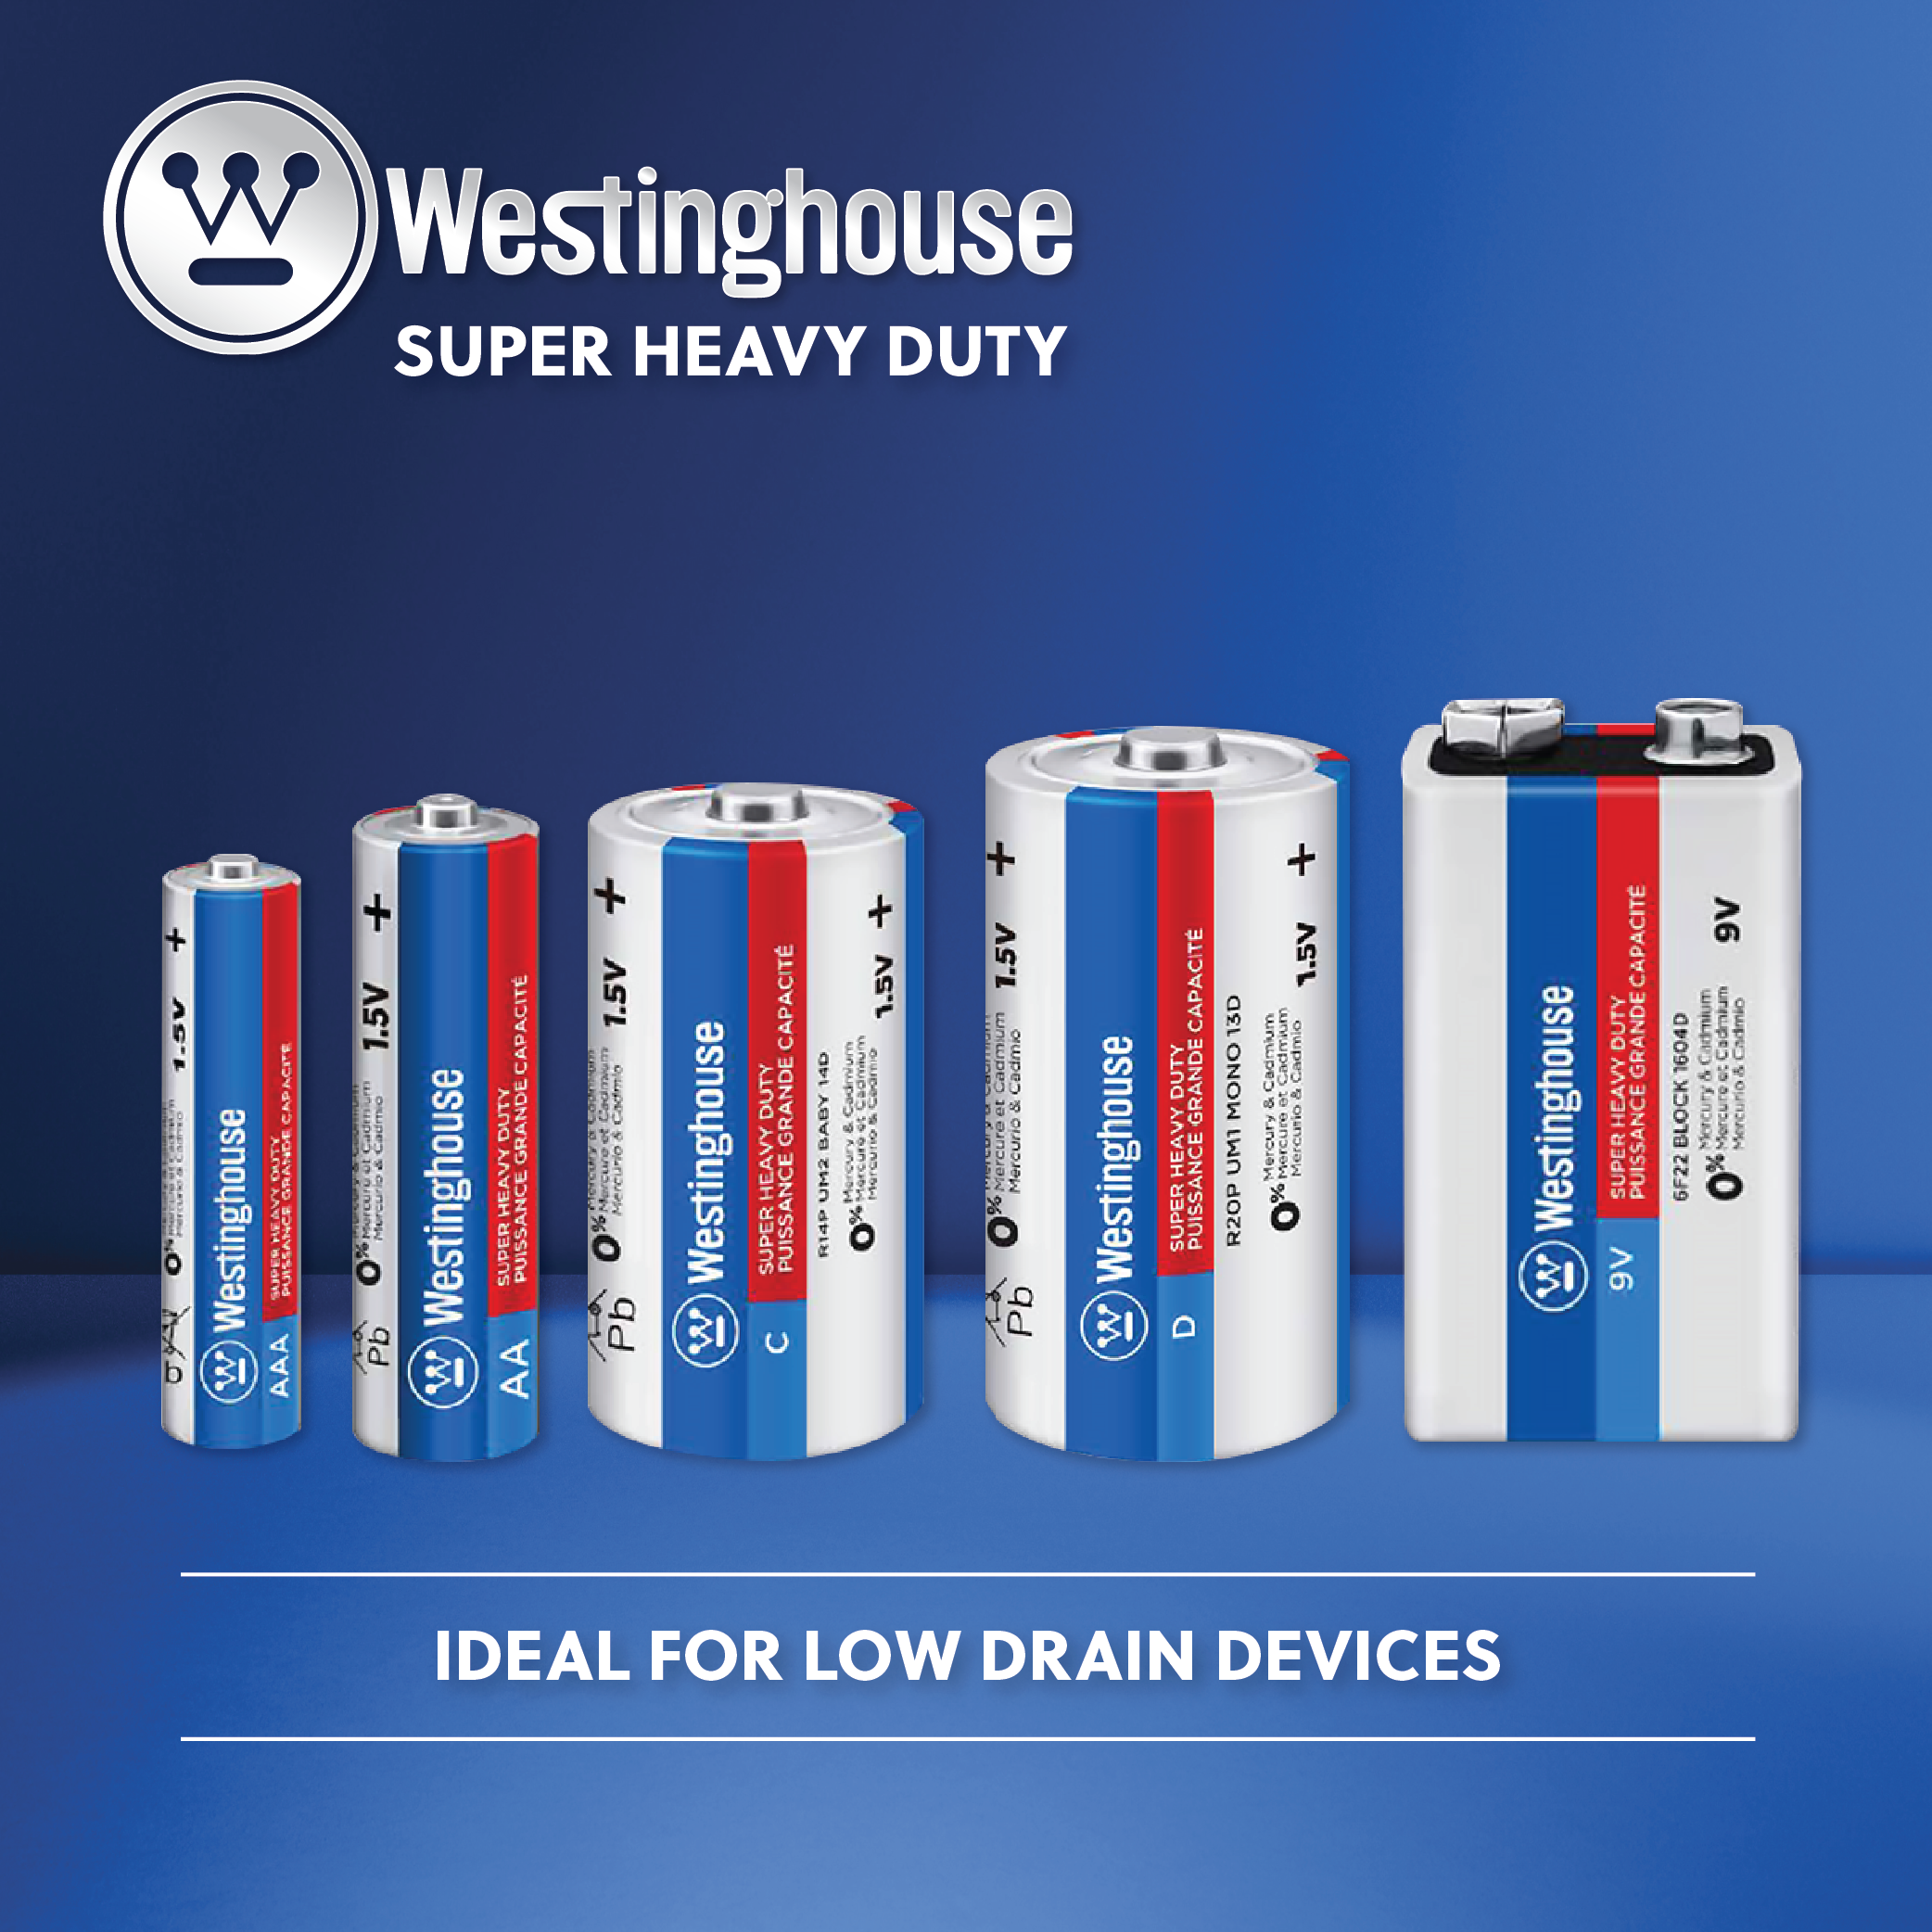 Westinghouse AAA Super Heavy Duty